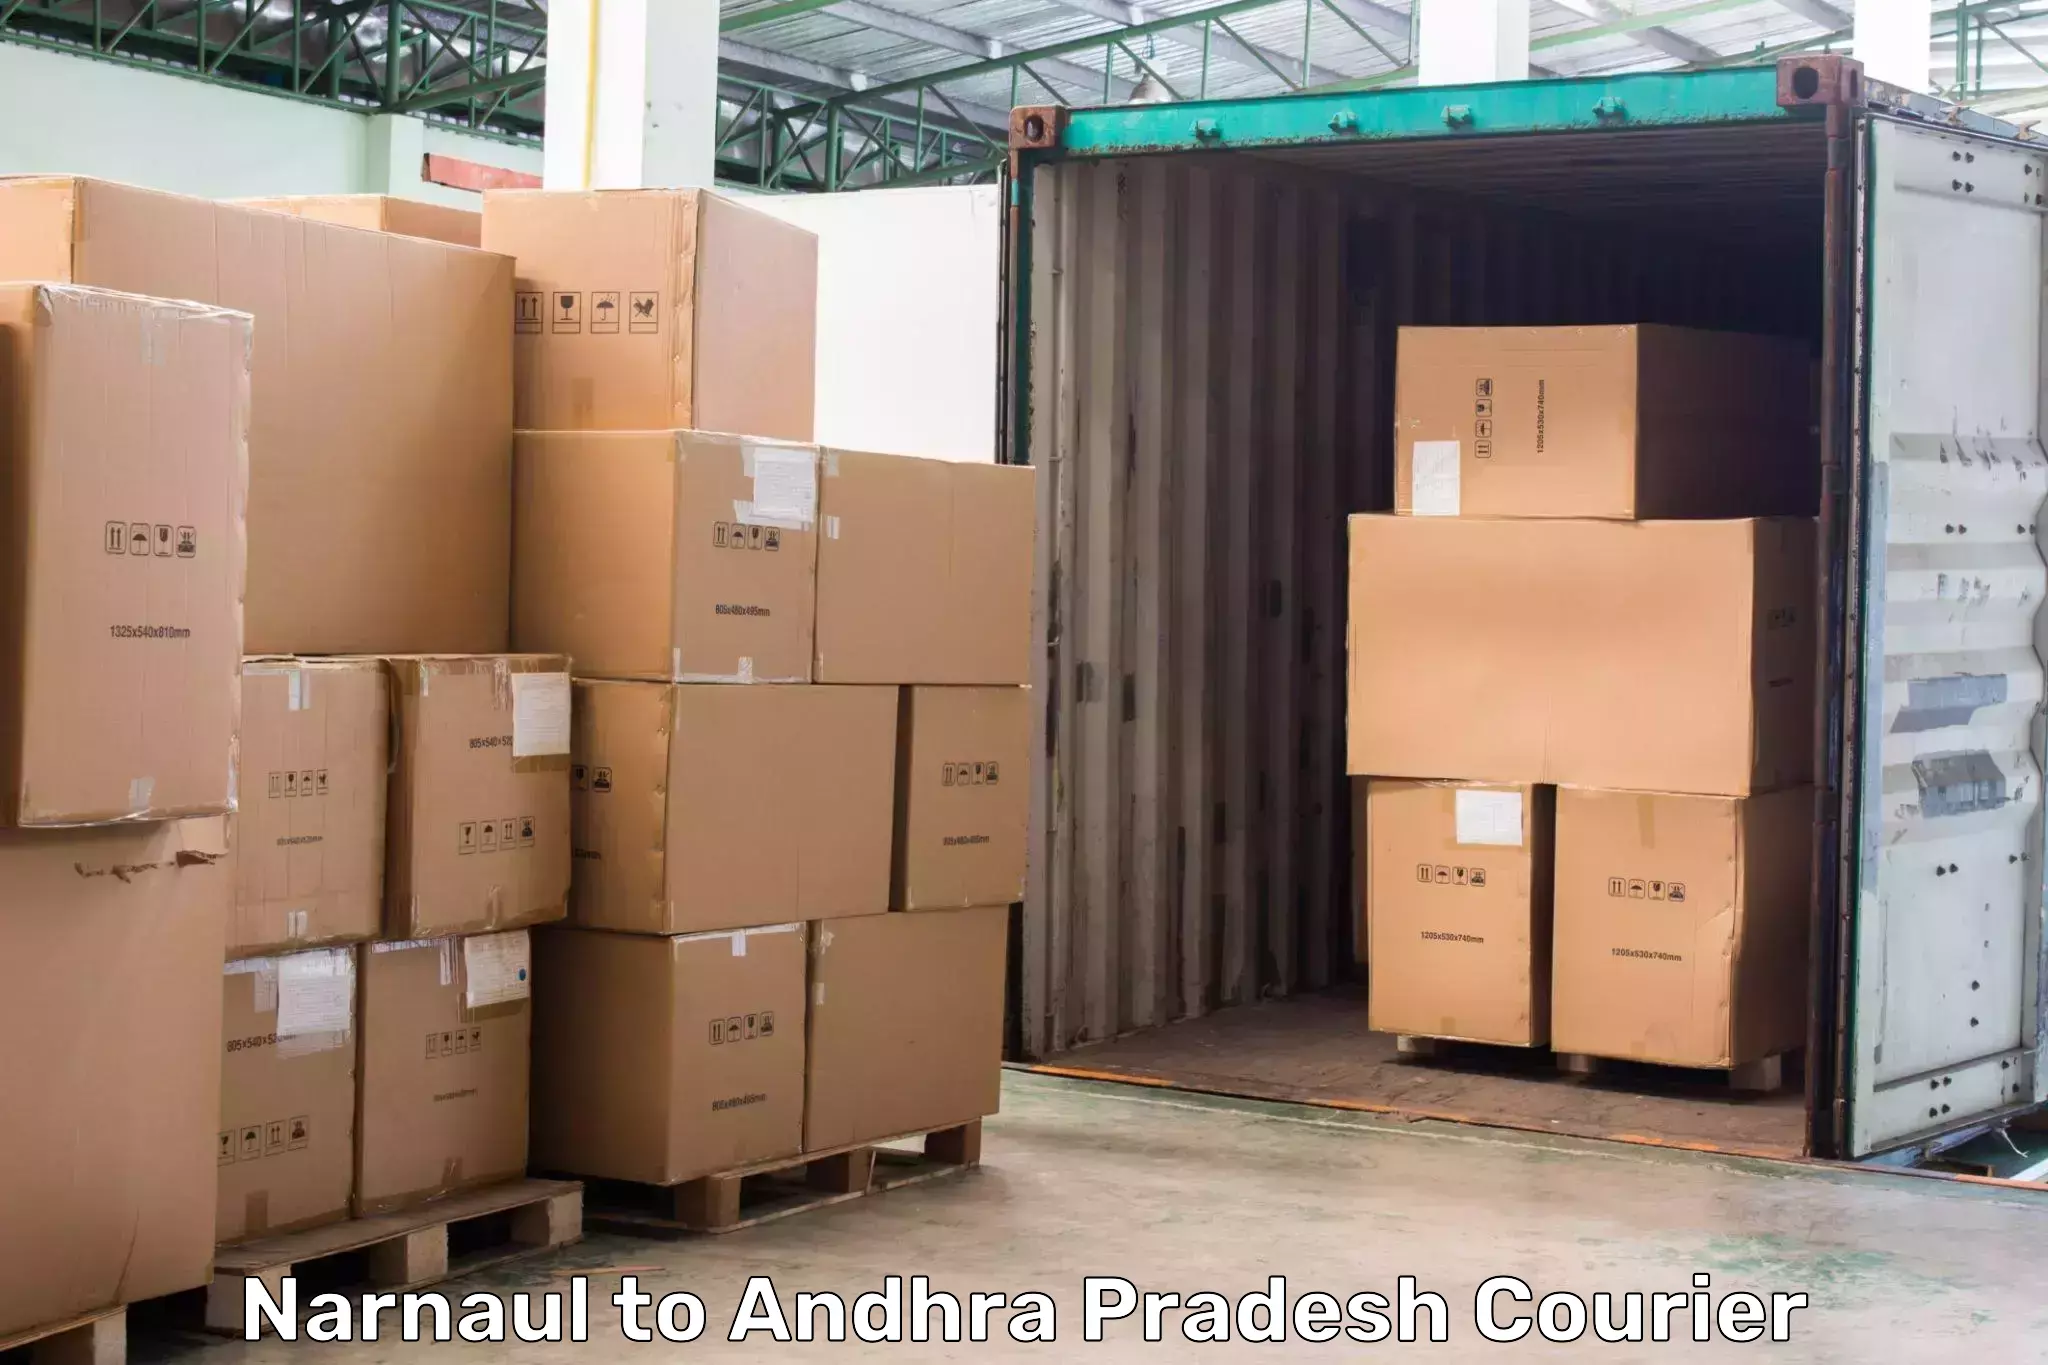 High-speed delivery Narnaul to Srungavarapukota SKota